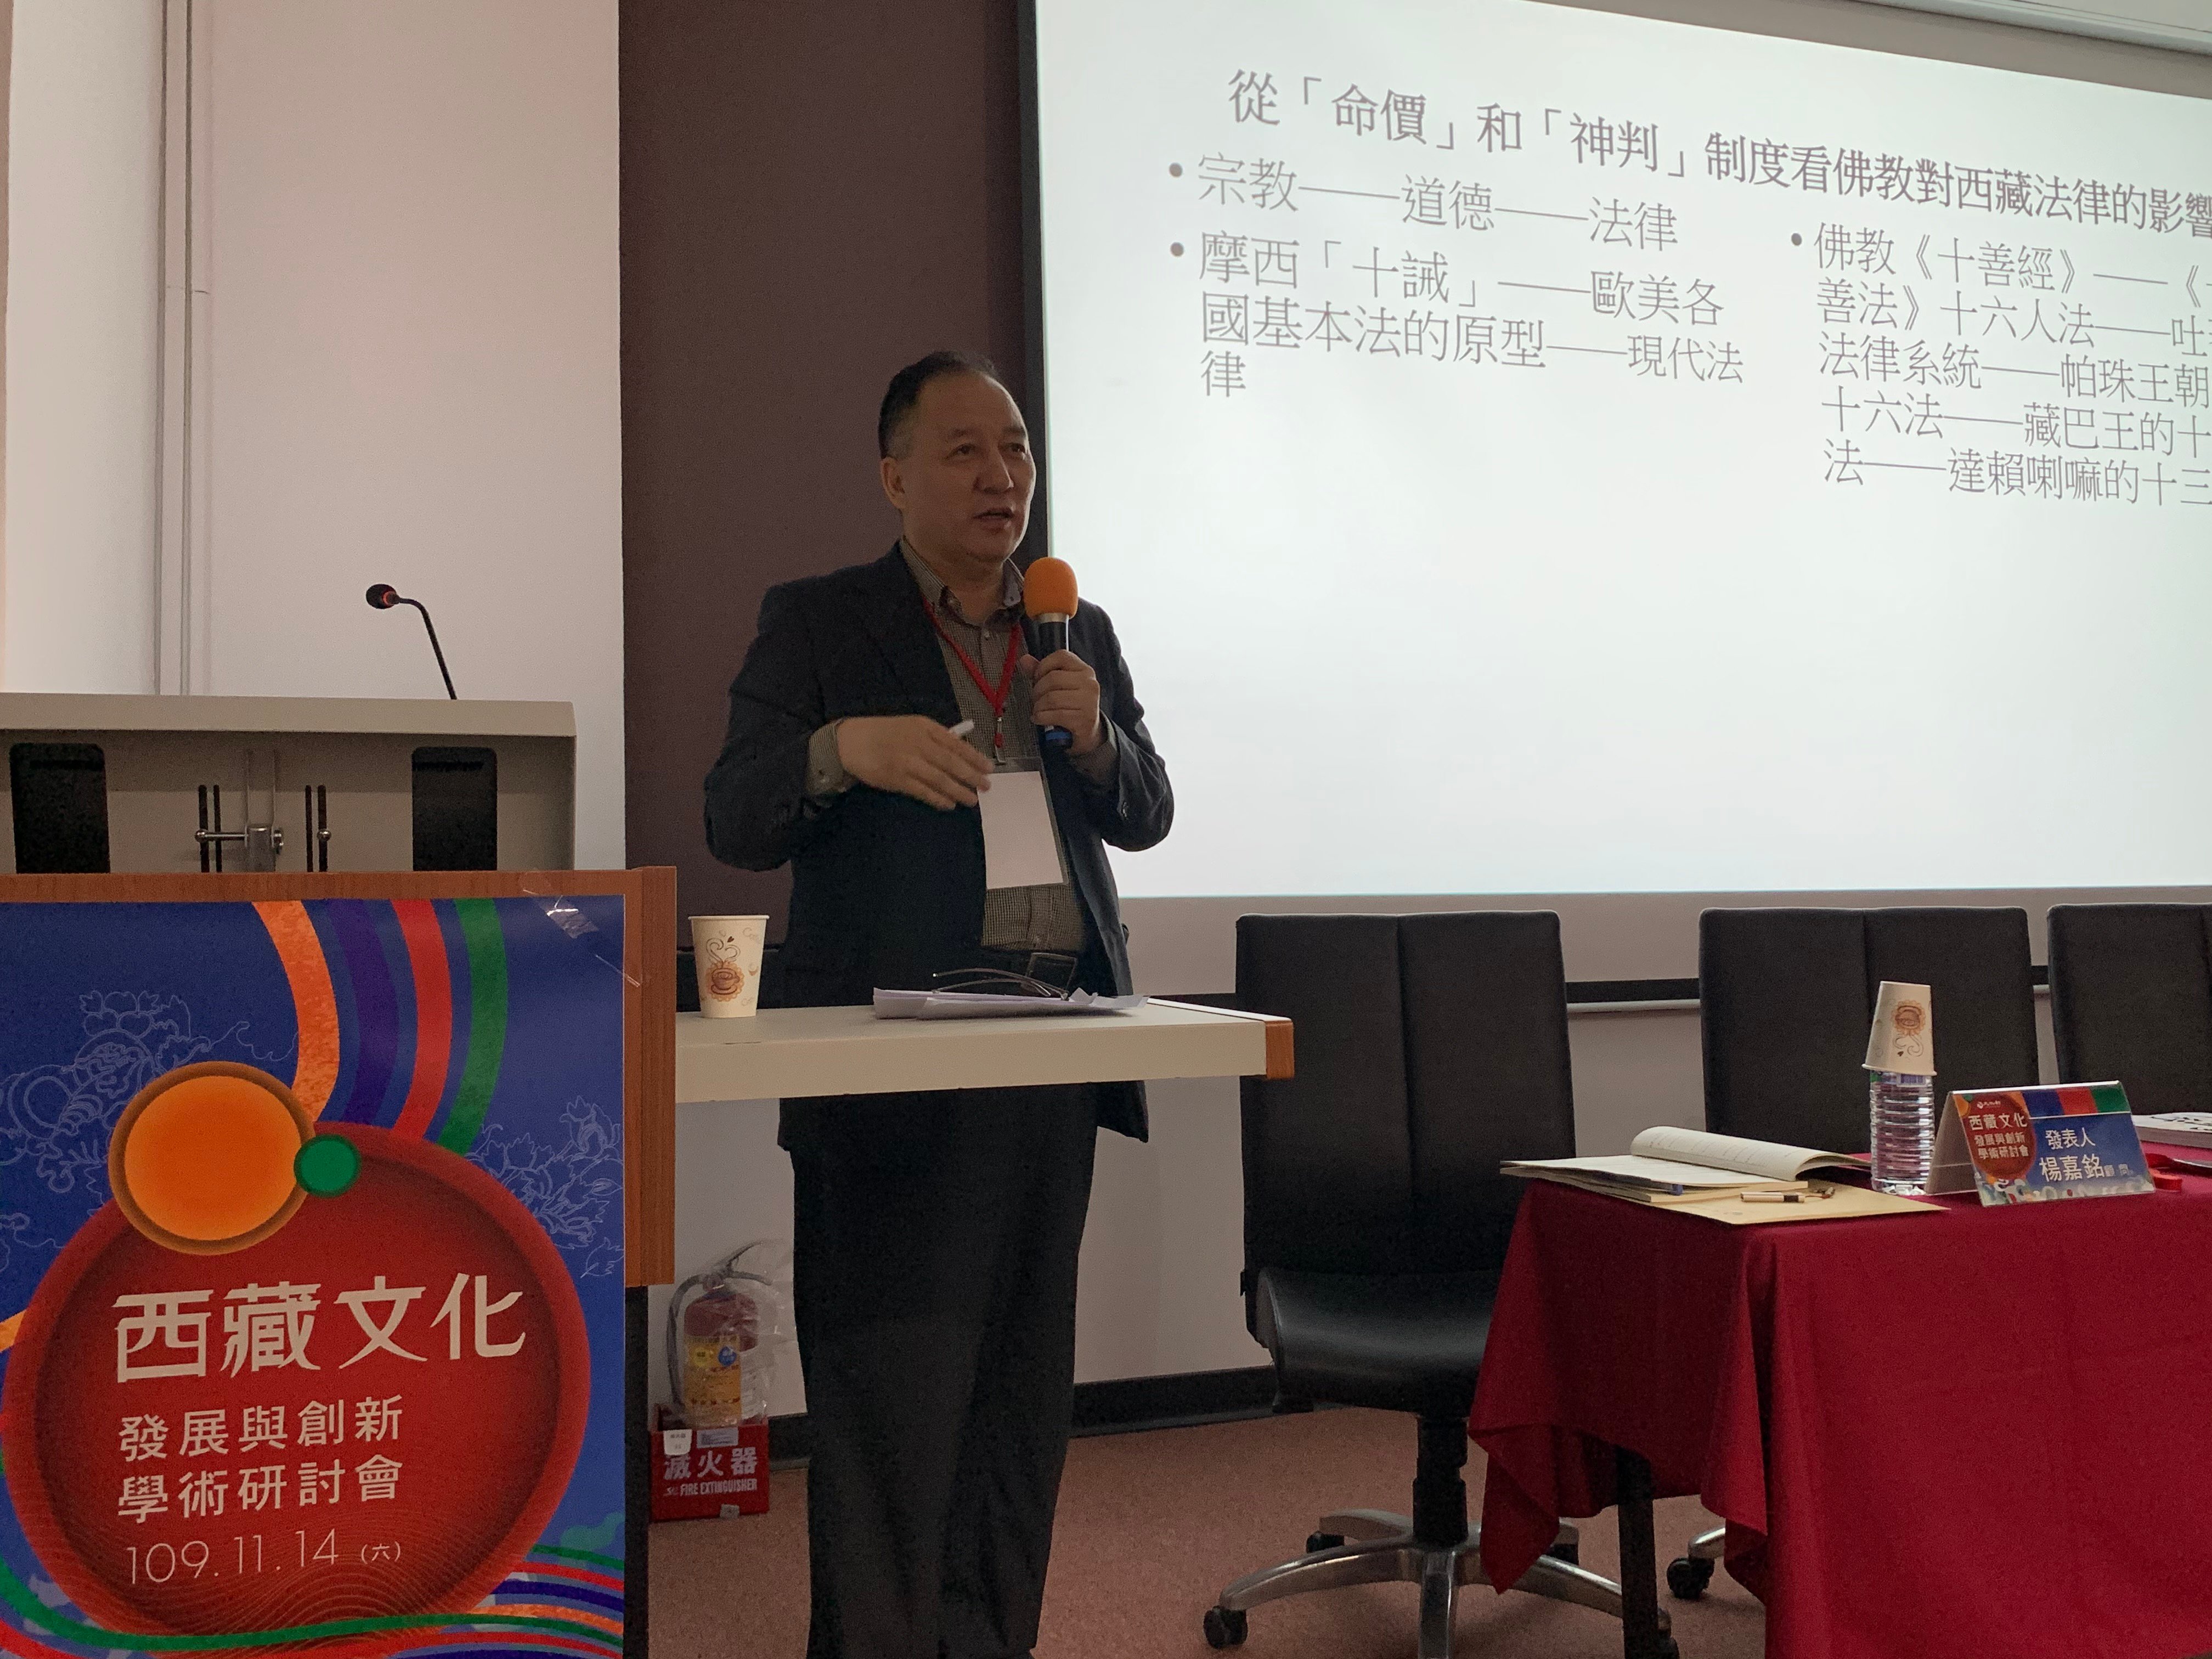 藏人行政中央驻台湾办事处代表达瓦才仁在台湾文化部主办的“西藏文化发展与创新学术研讨会”上介绍西藏文化   2020年11月14日   照片/驻台湾办事处提供